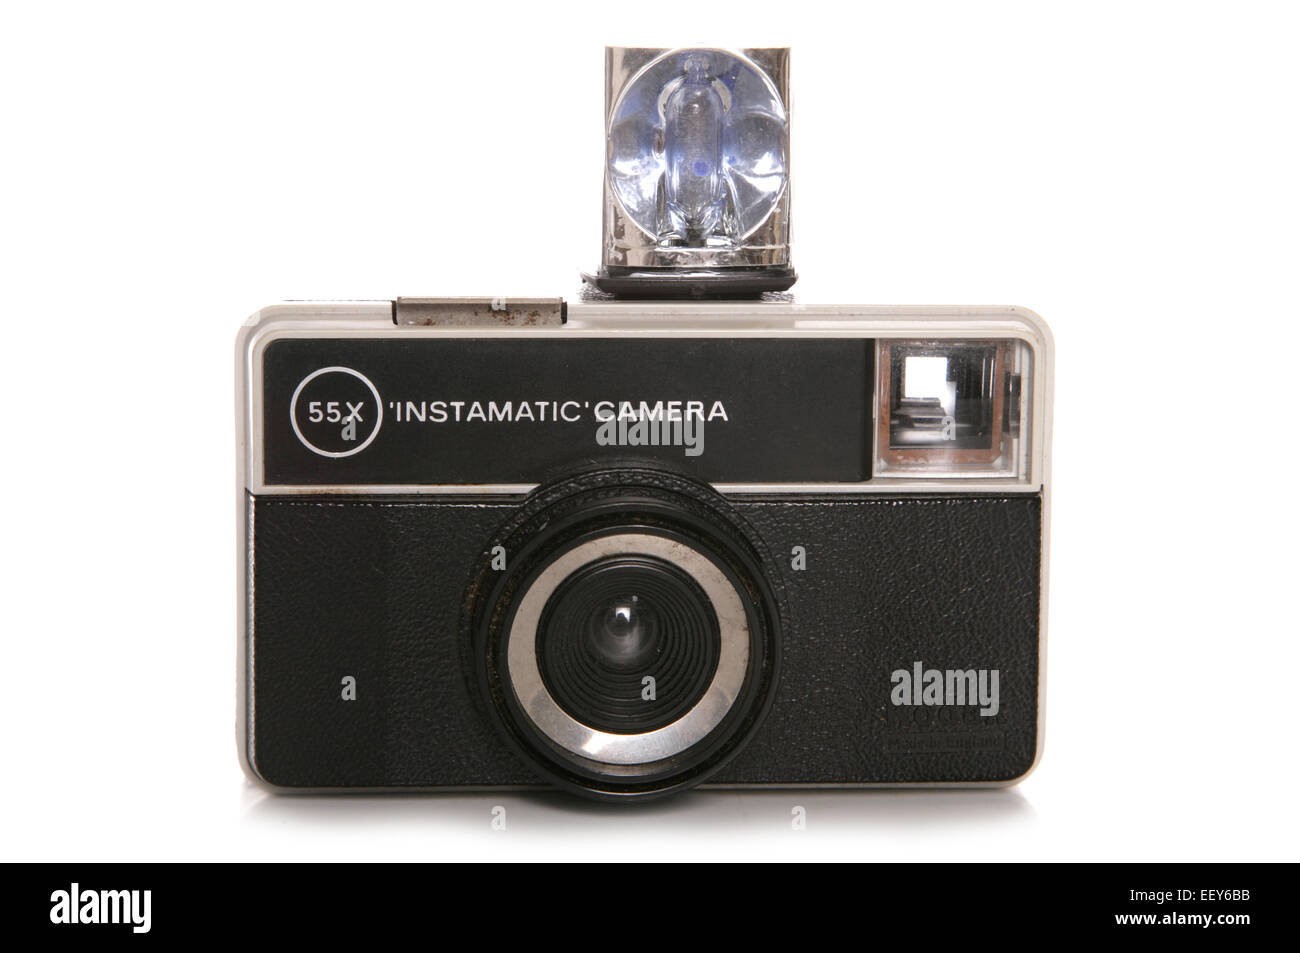 55x Instamatic fotocamera con flash intaglio Foto Stock